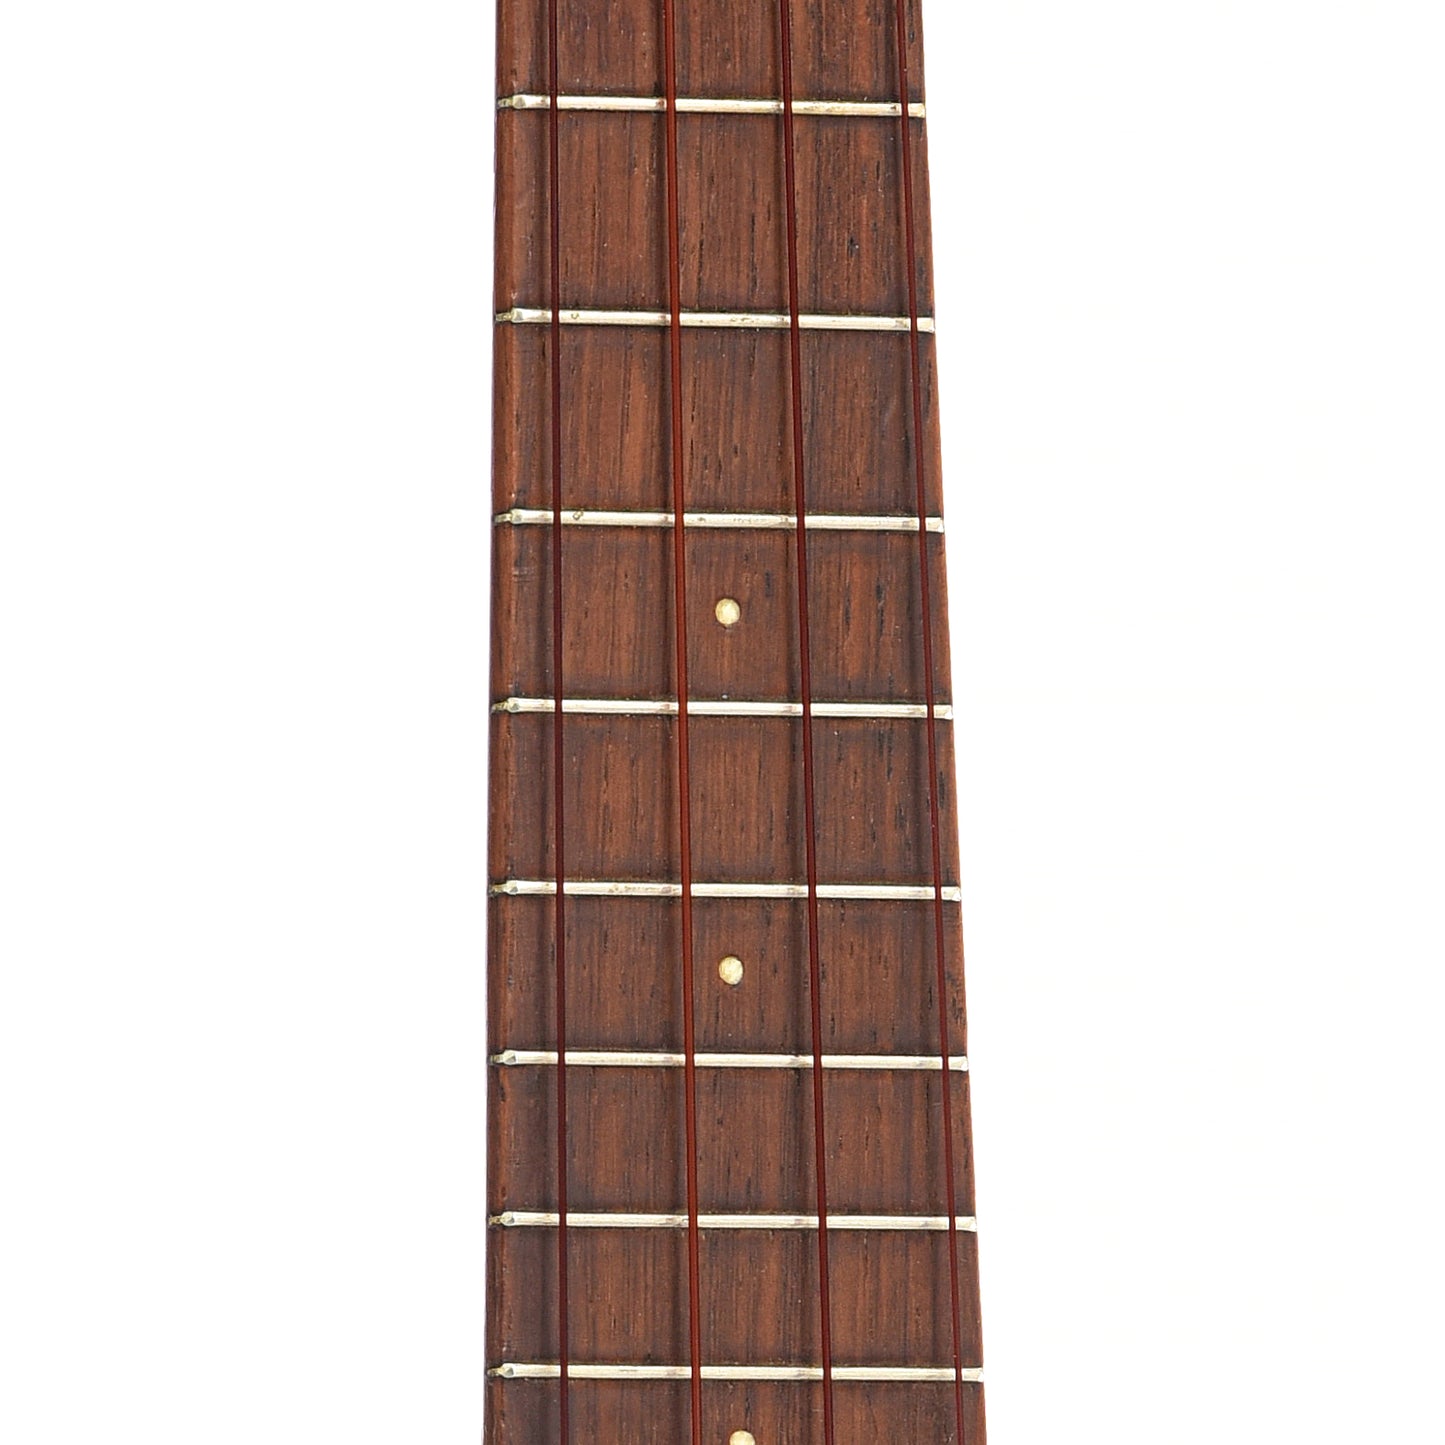 Fretboard of Style 0 soprano ukulele